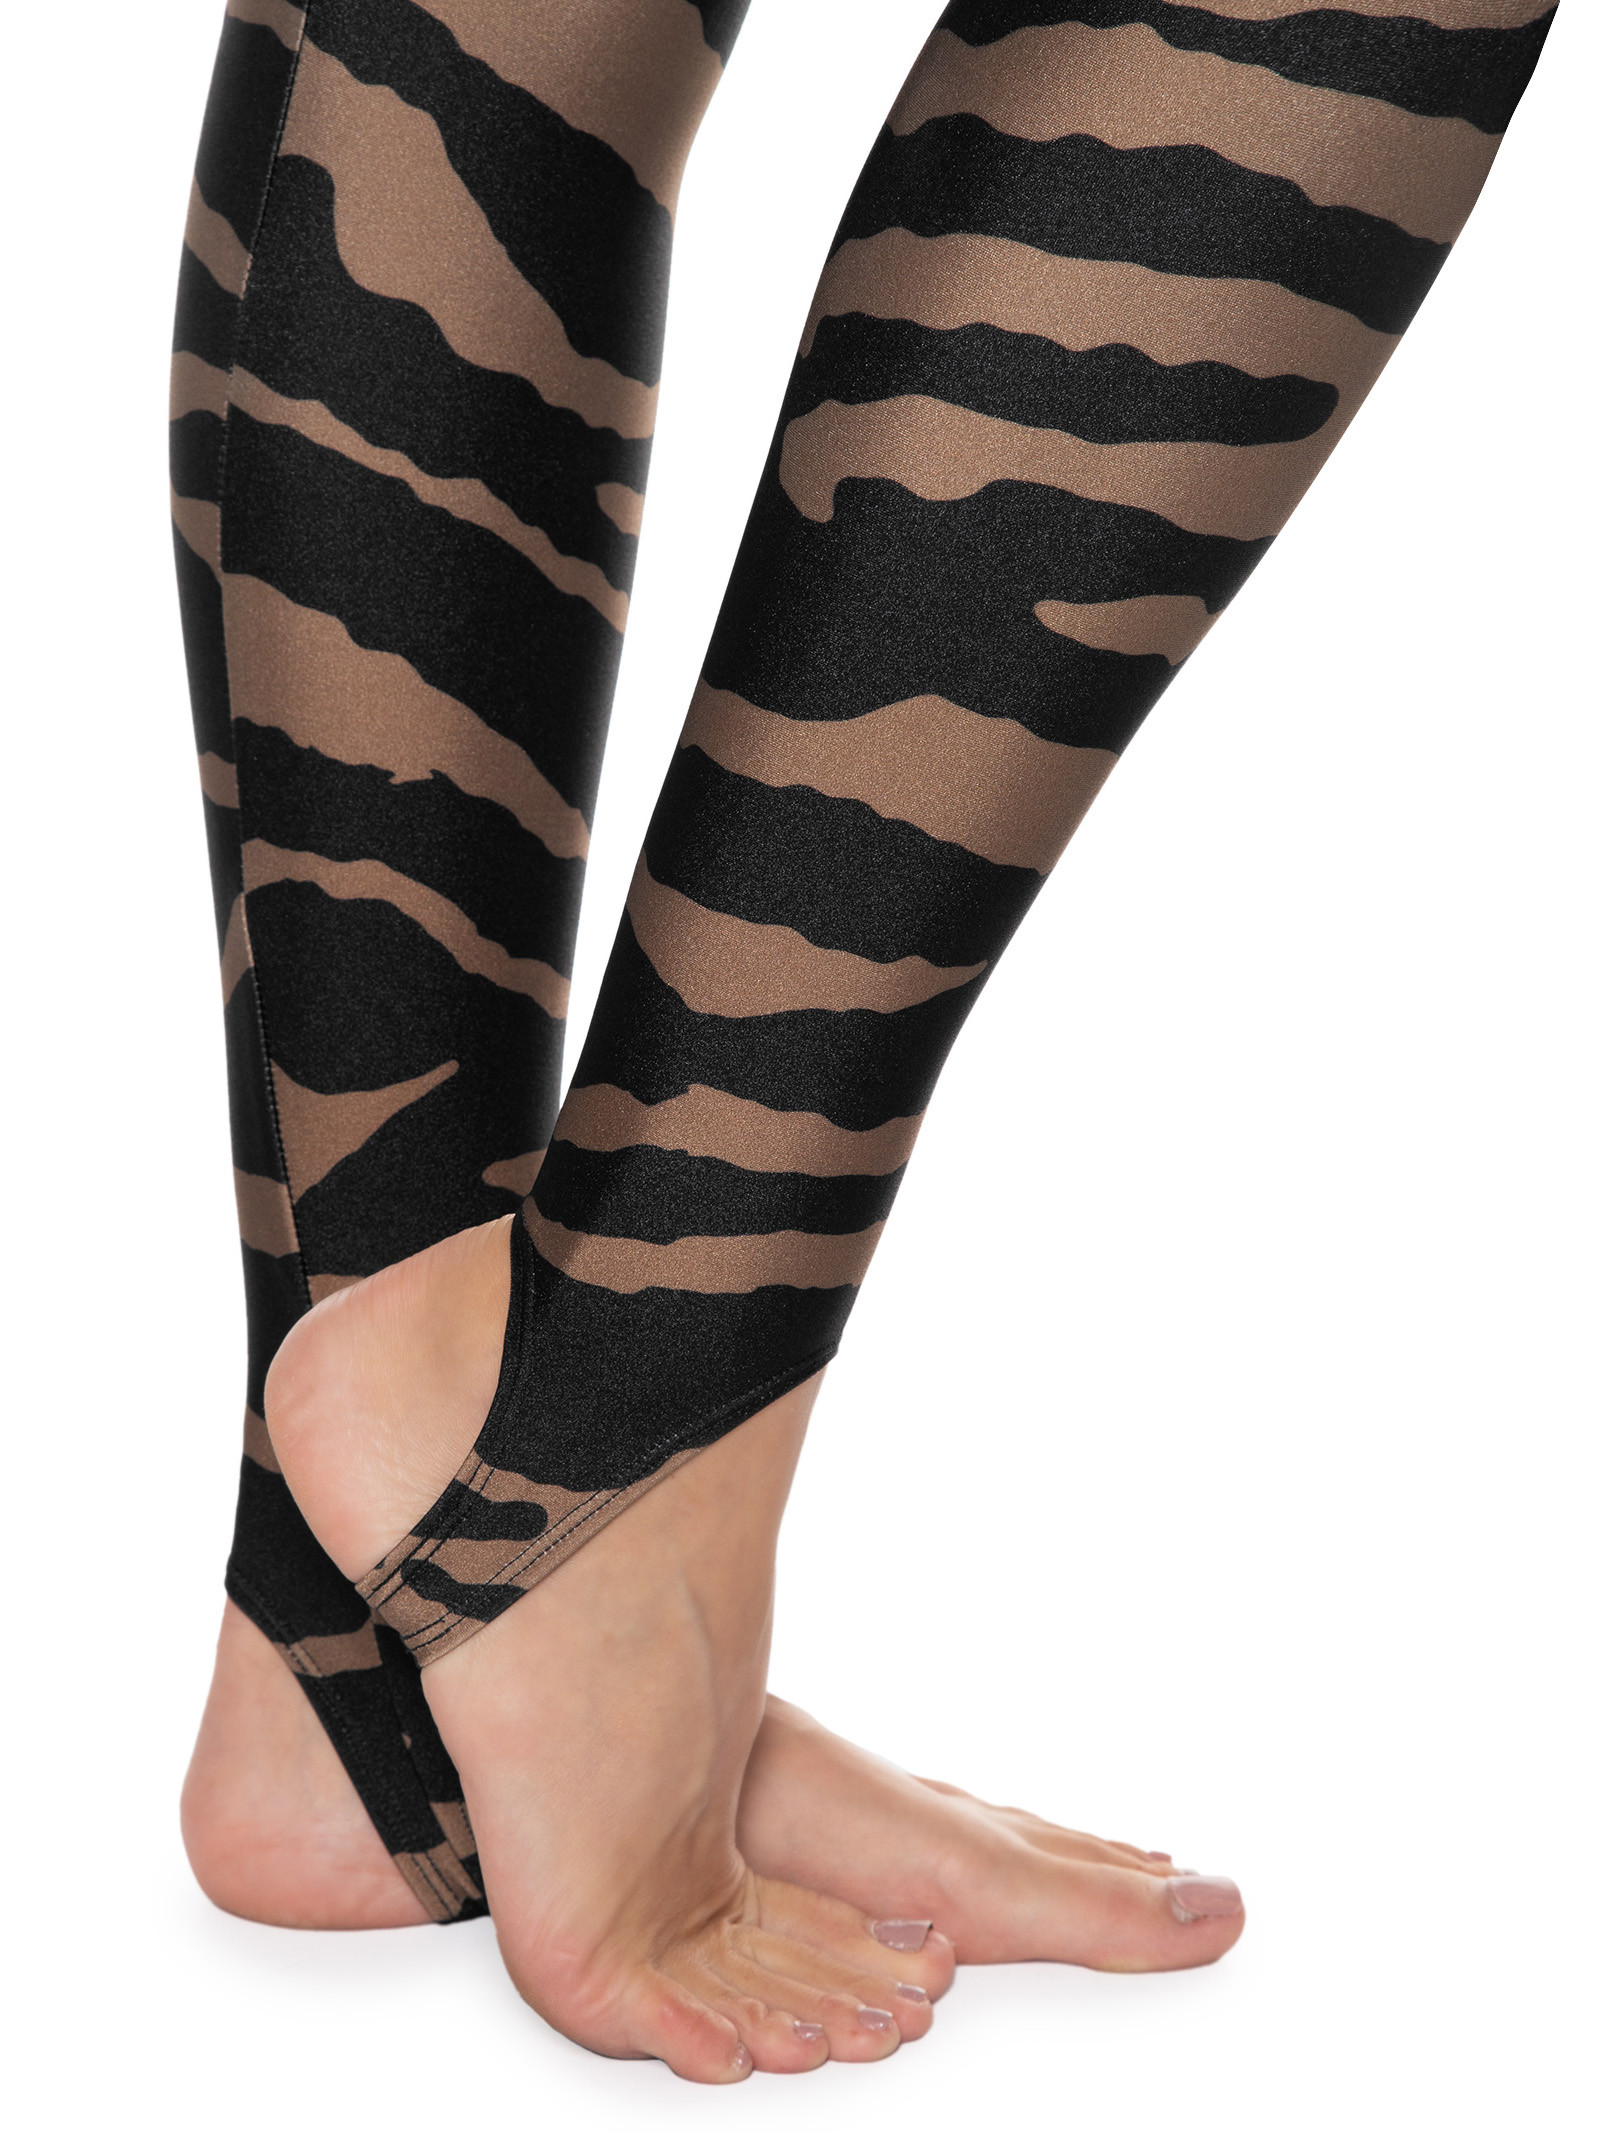 Legging Adidas Zebra - feminino - preto+zebra Preto